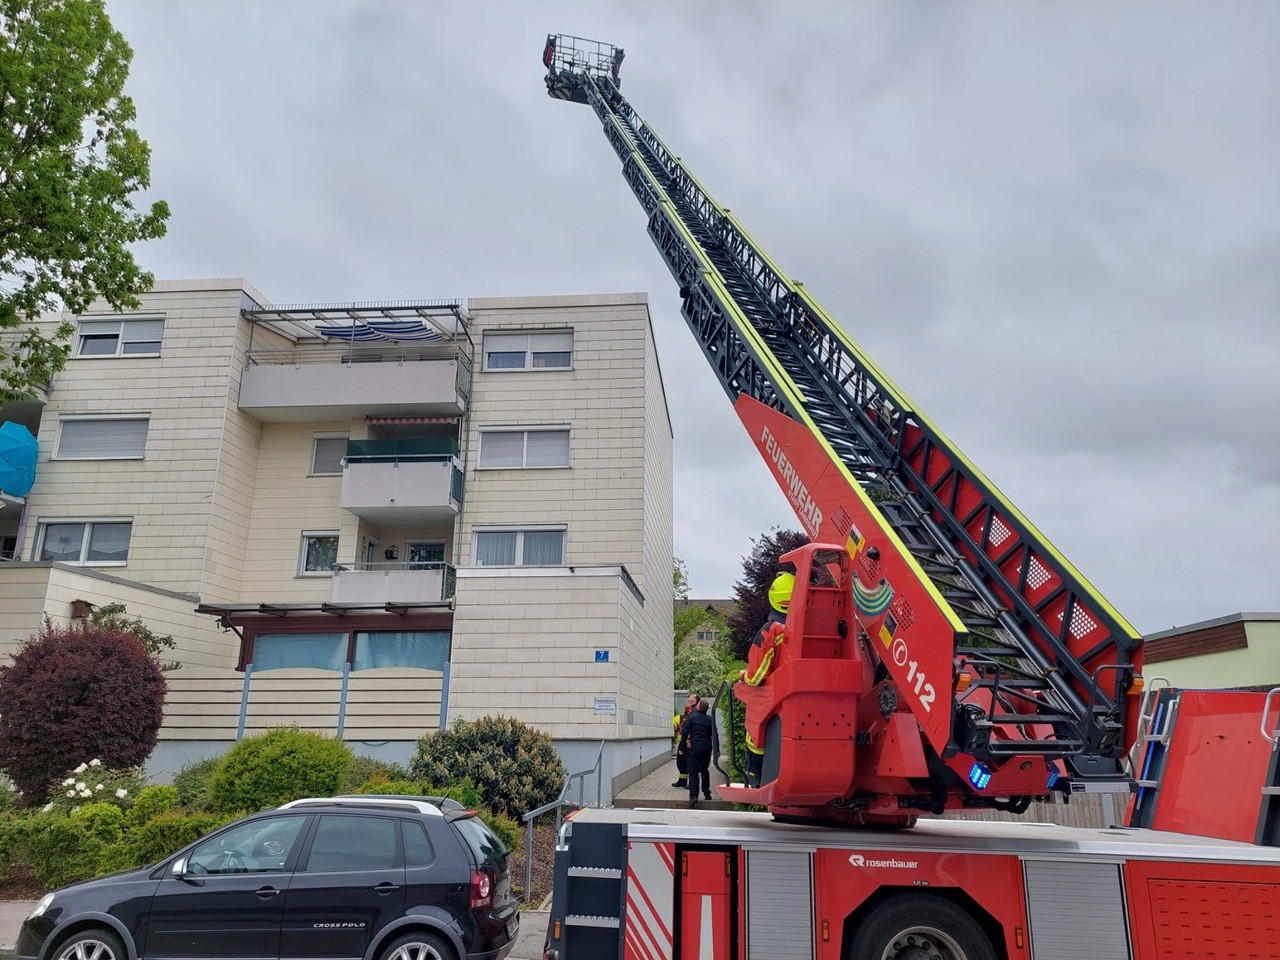 Feuerwehr Landshut führt Fortbildung für Drehleitermaschinisten durch